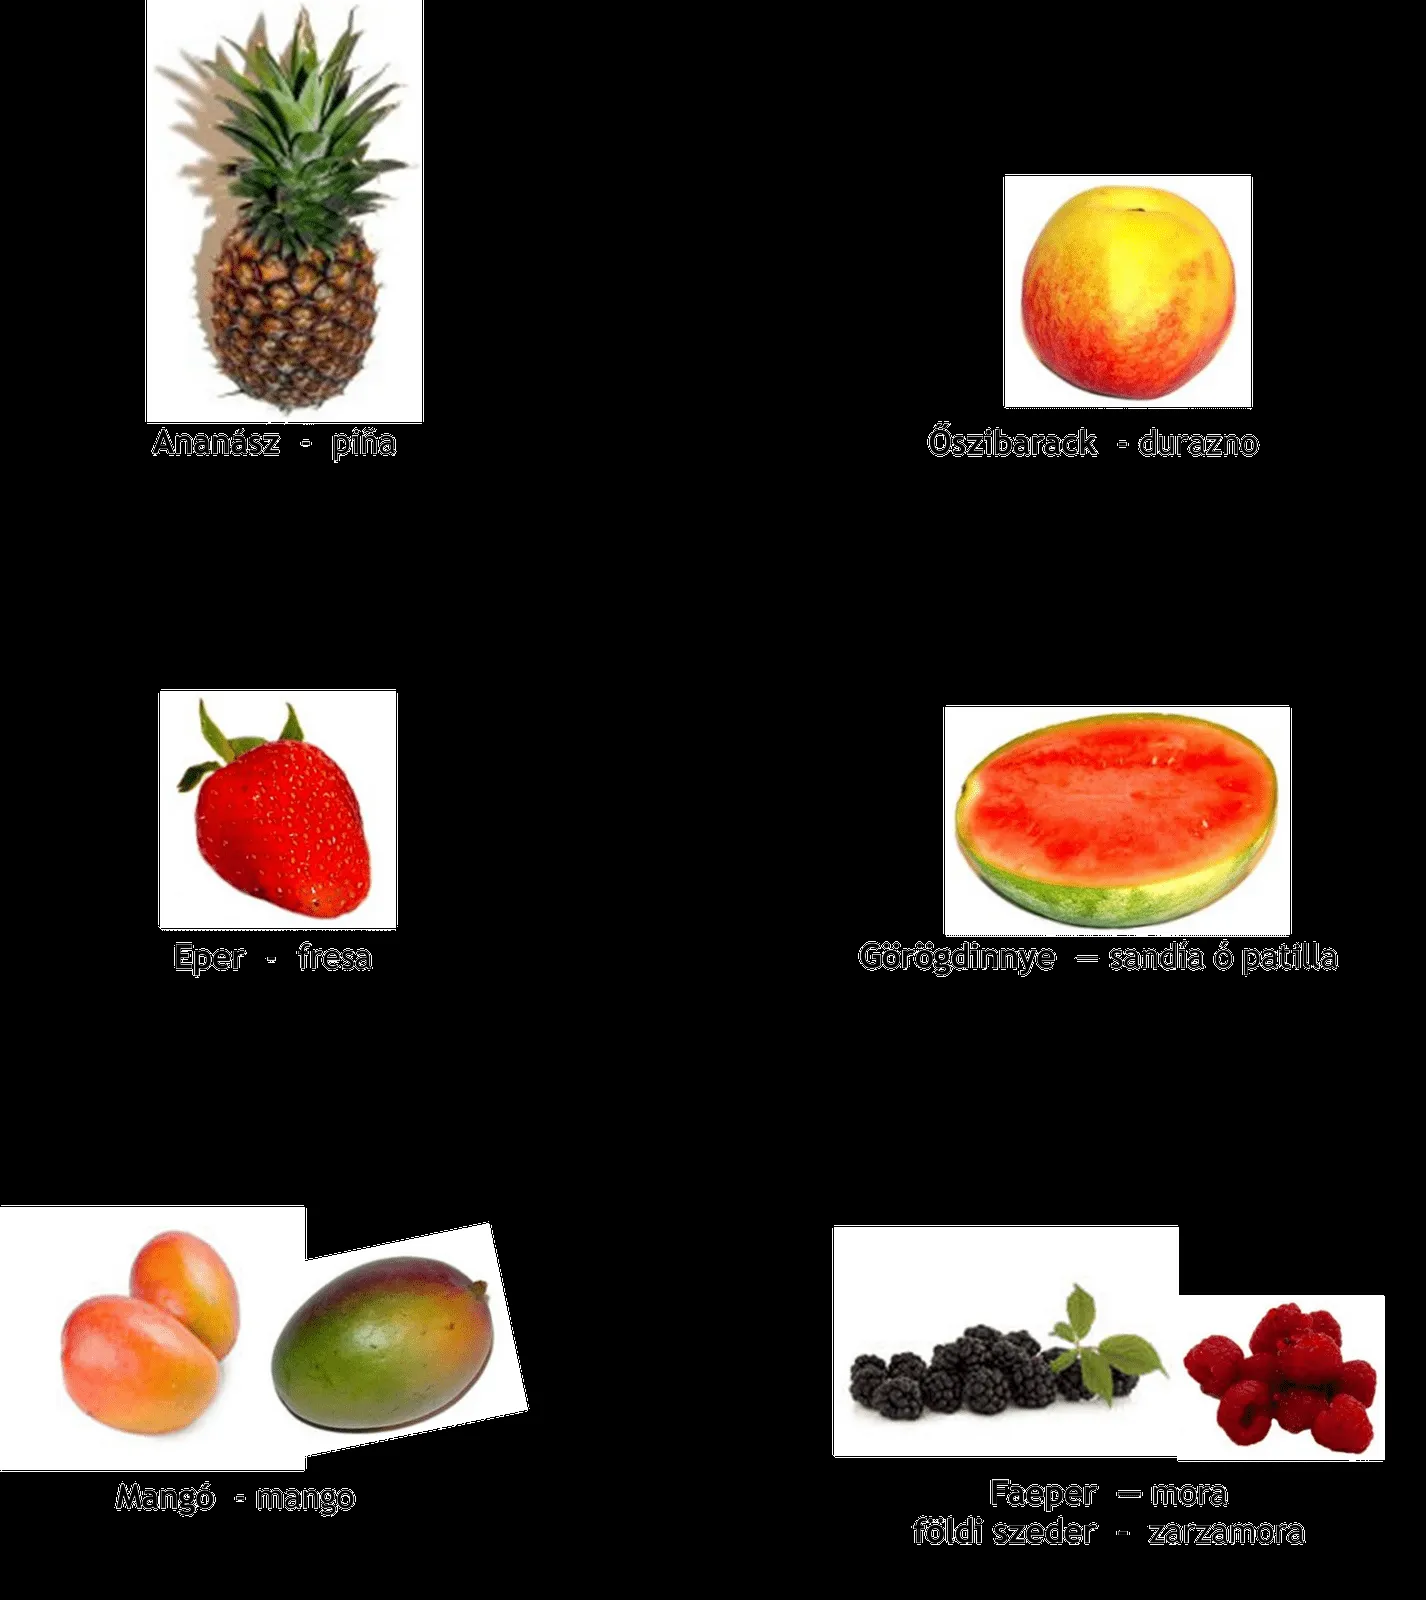 Nombres de frutas en ingles y español - Imagui